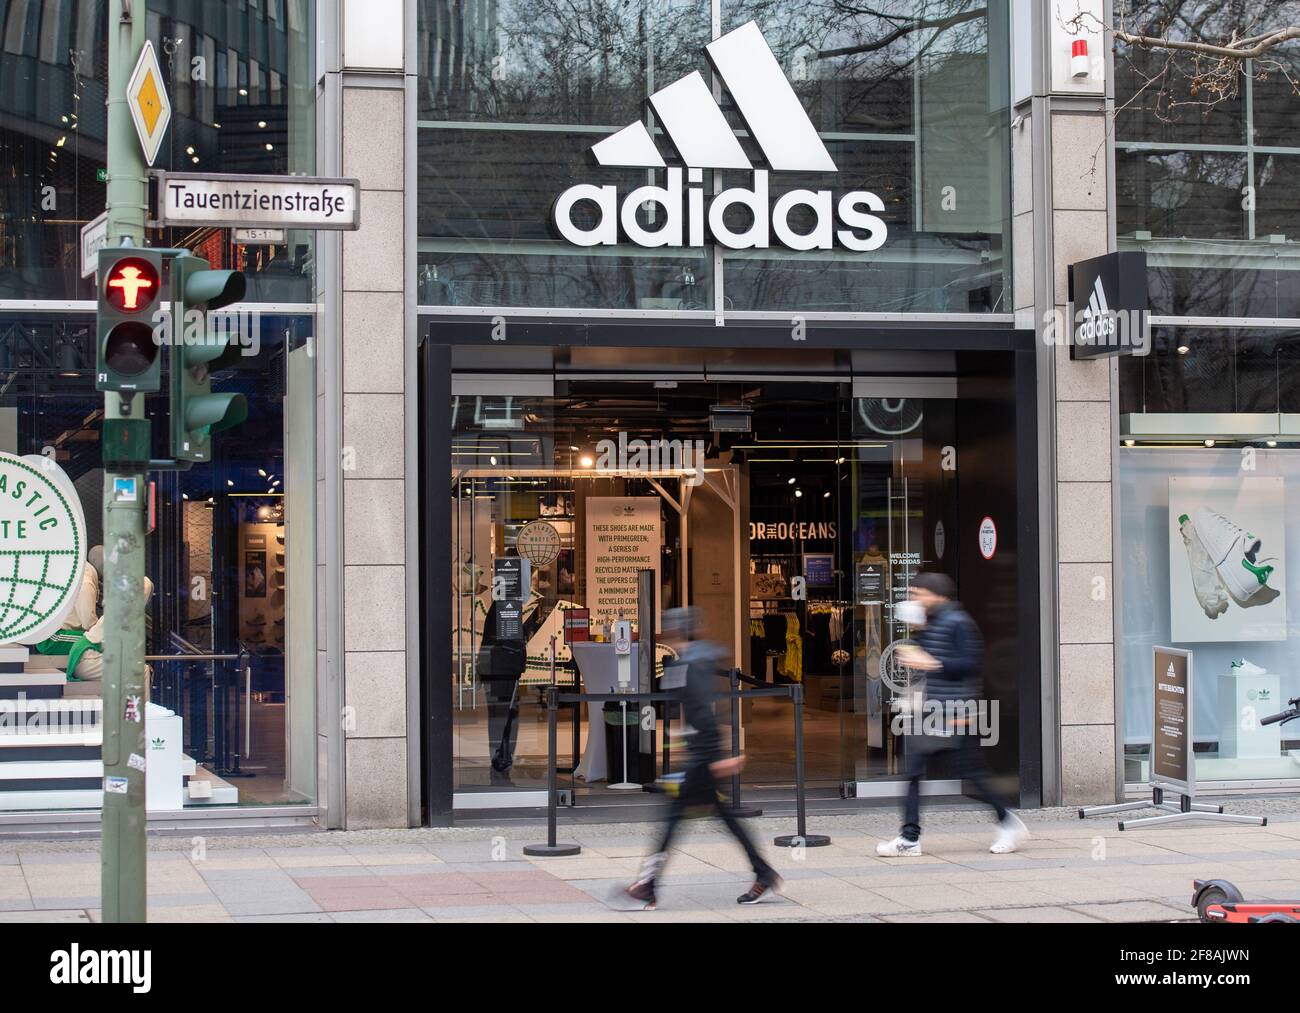 Berlino, Germania. 12 Aprile 2021. La gente passa accanto al negozio Adidas  sulla Tauentzienstrasse. I produttori di grandi marchi come Adidas, Miele e  Co. Stanno sempre più eludendo i rivenditori e vendendo